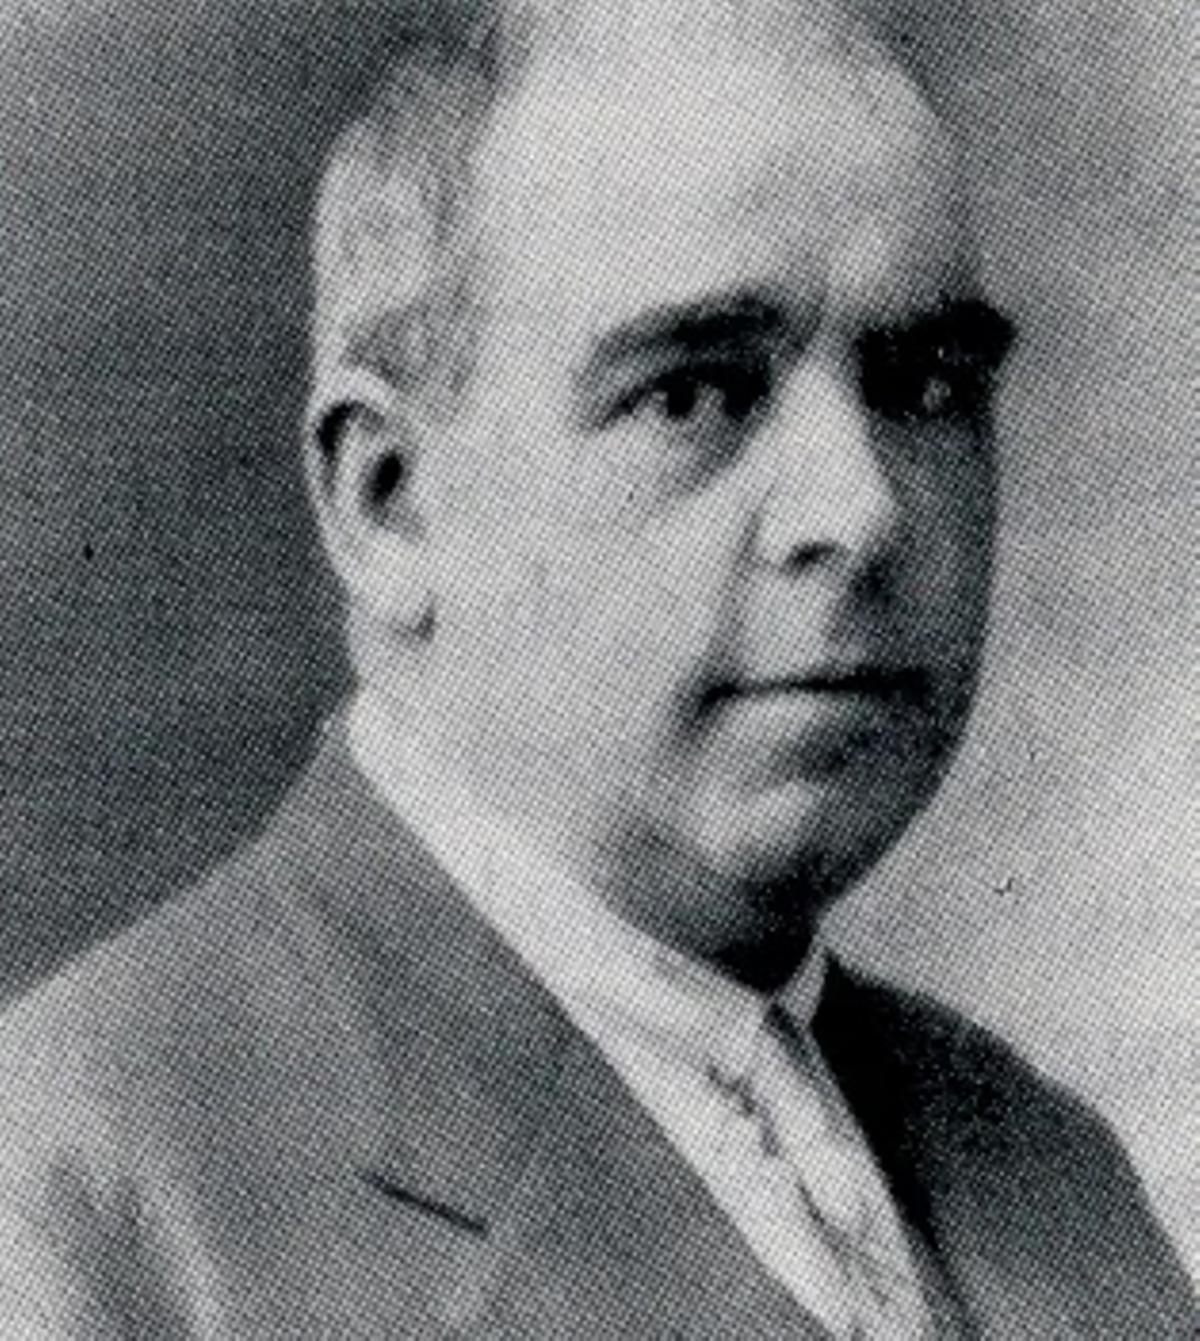 El concejal socialista de Oviedo Bonifacio Martín